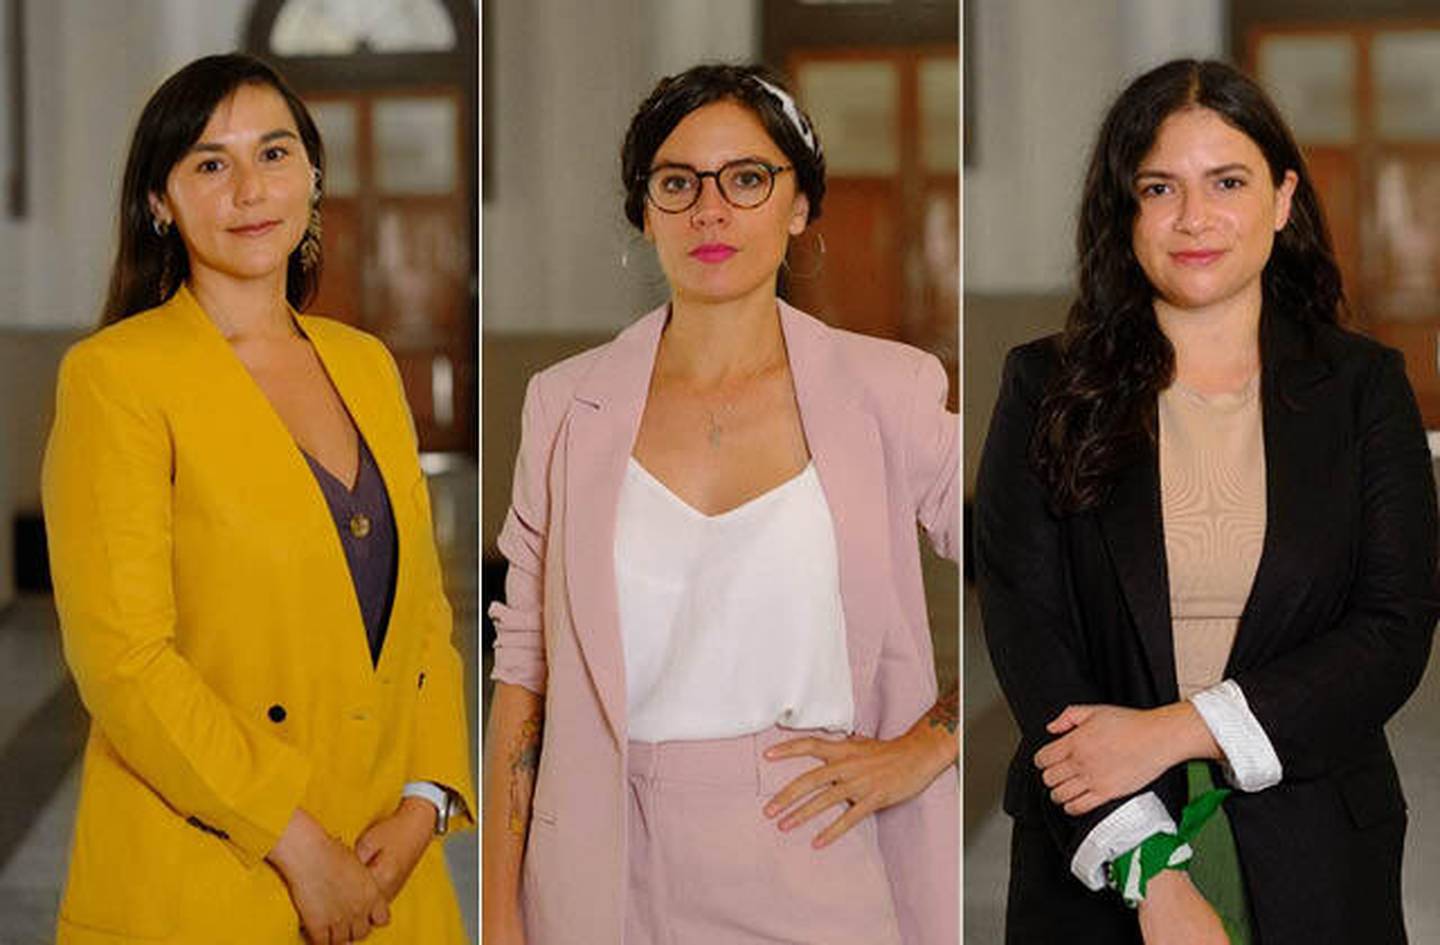 Izkia Siches (Ministro del Interior), Camila Vallejo (portavoz del Gobierno) y Antonia Orellana (Ministro de la Mujer).dfd